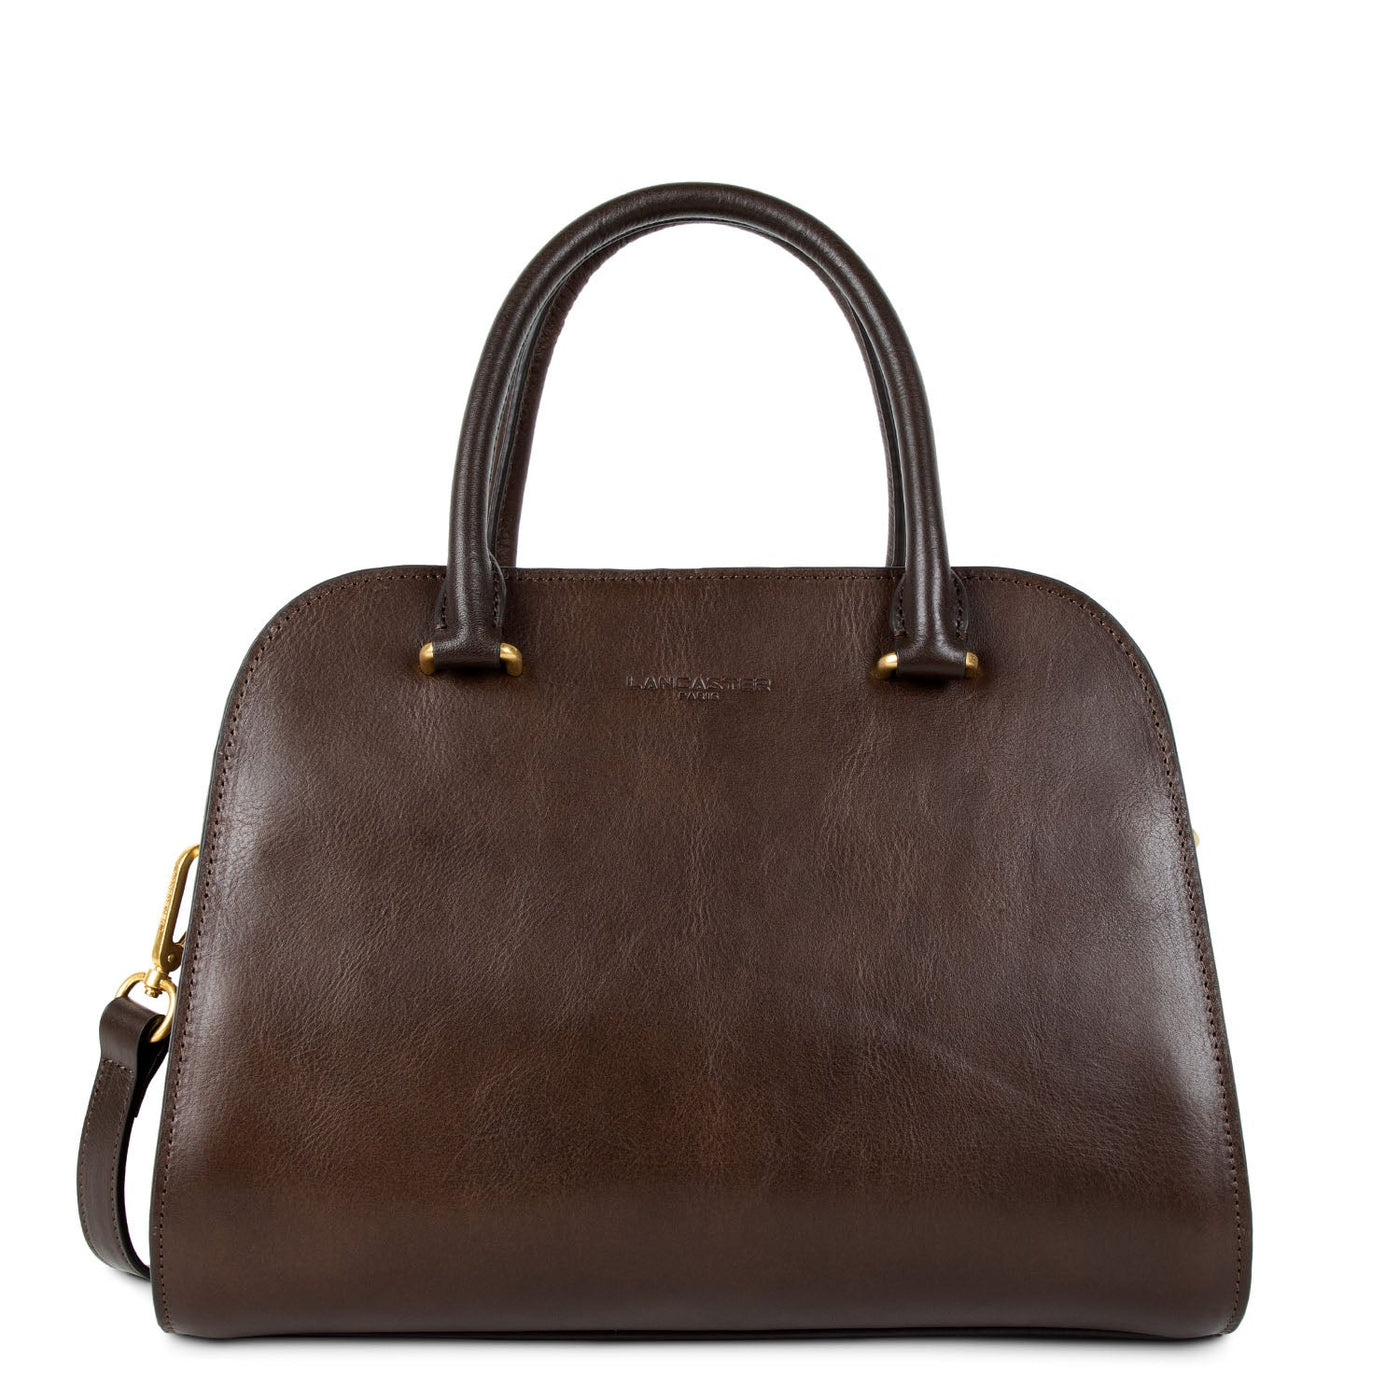 handbag - légende #couleur_marron